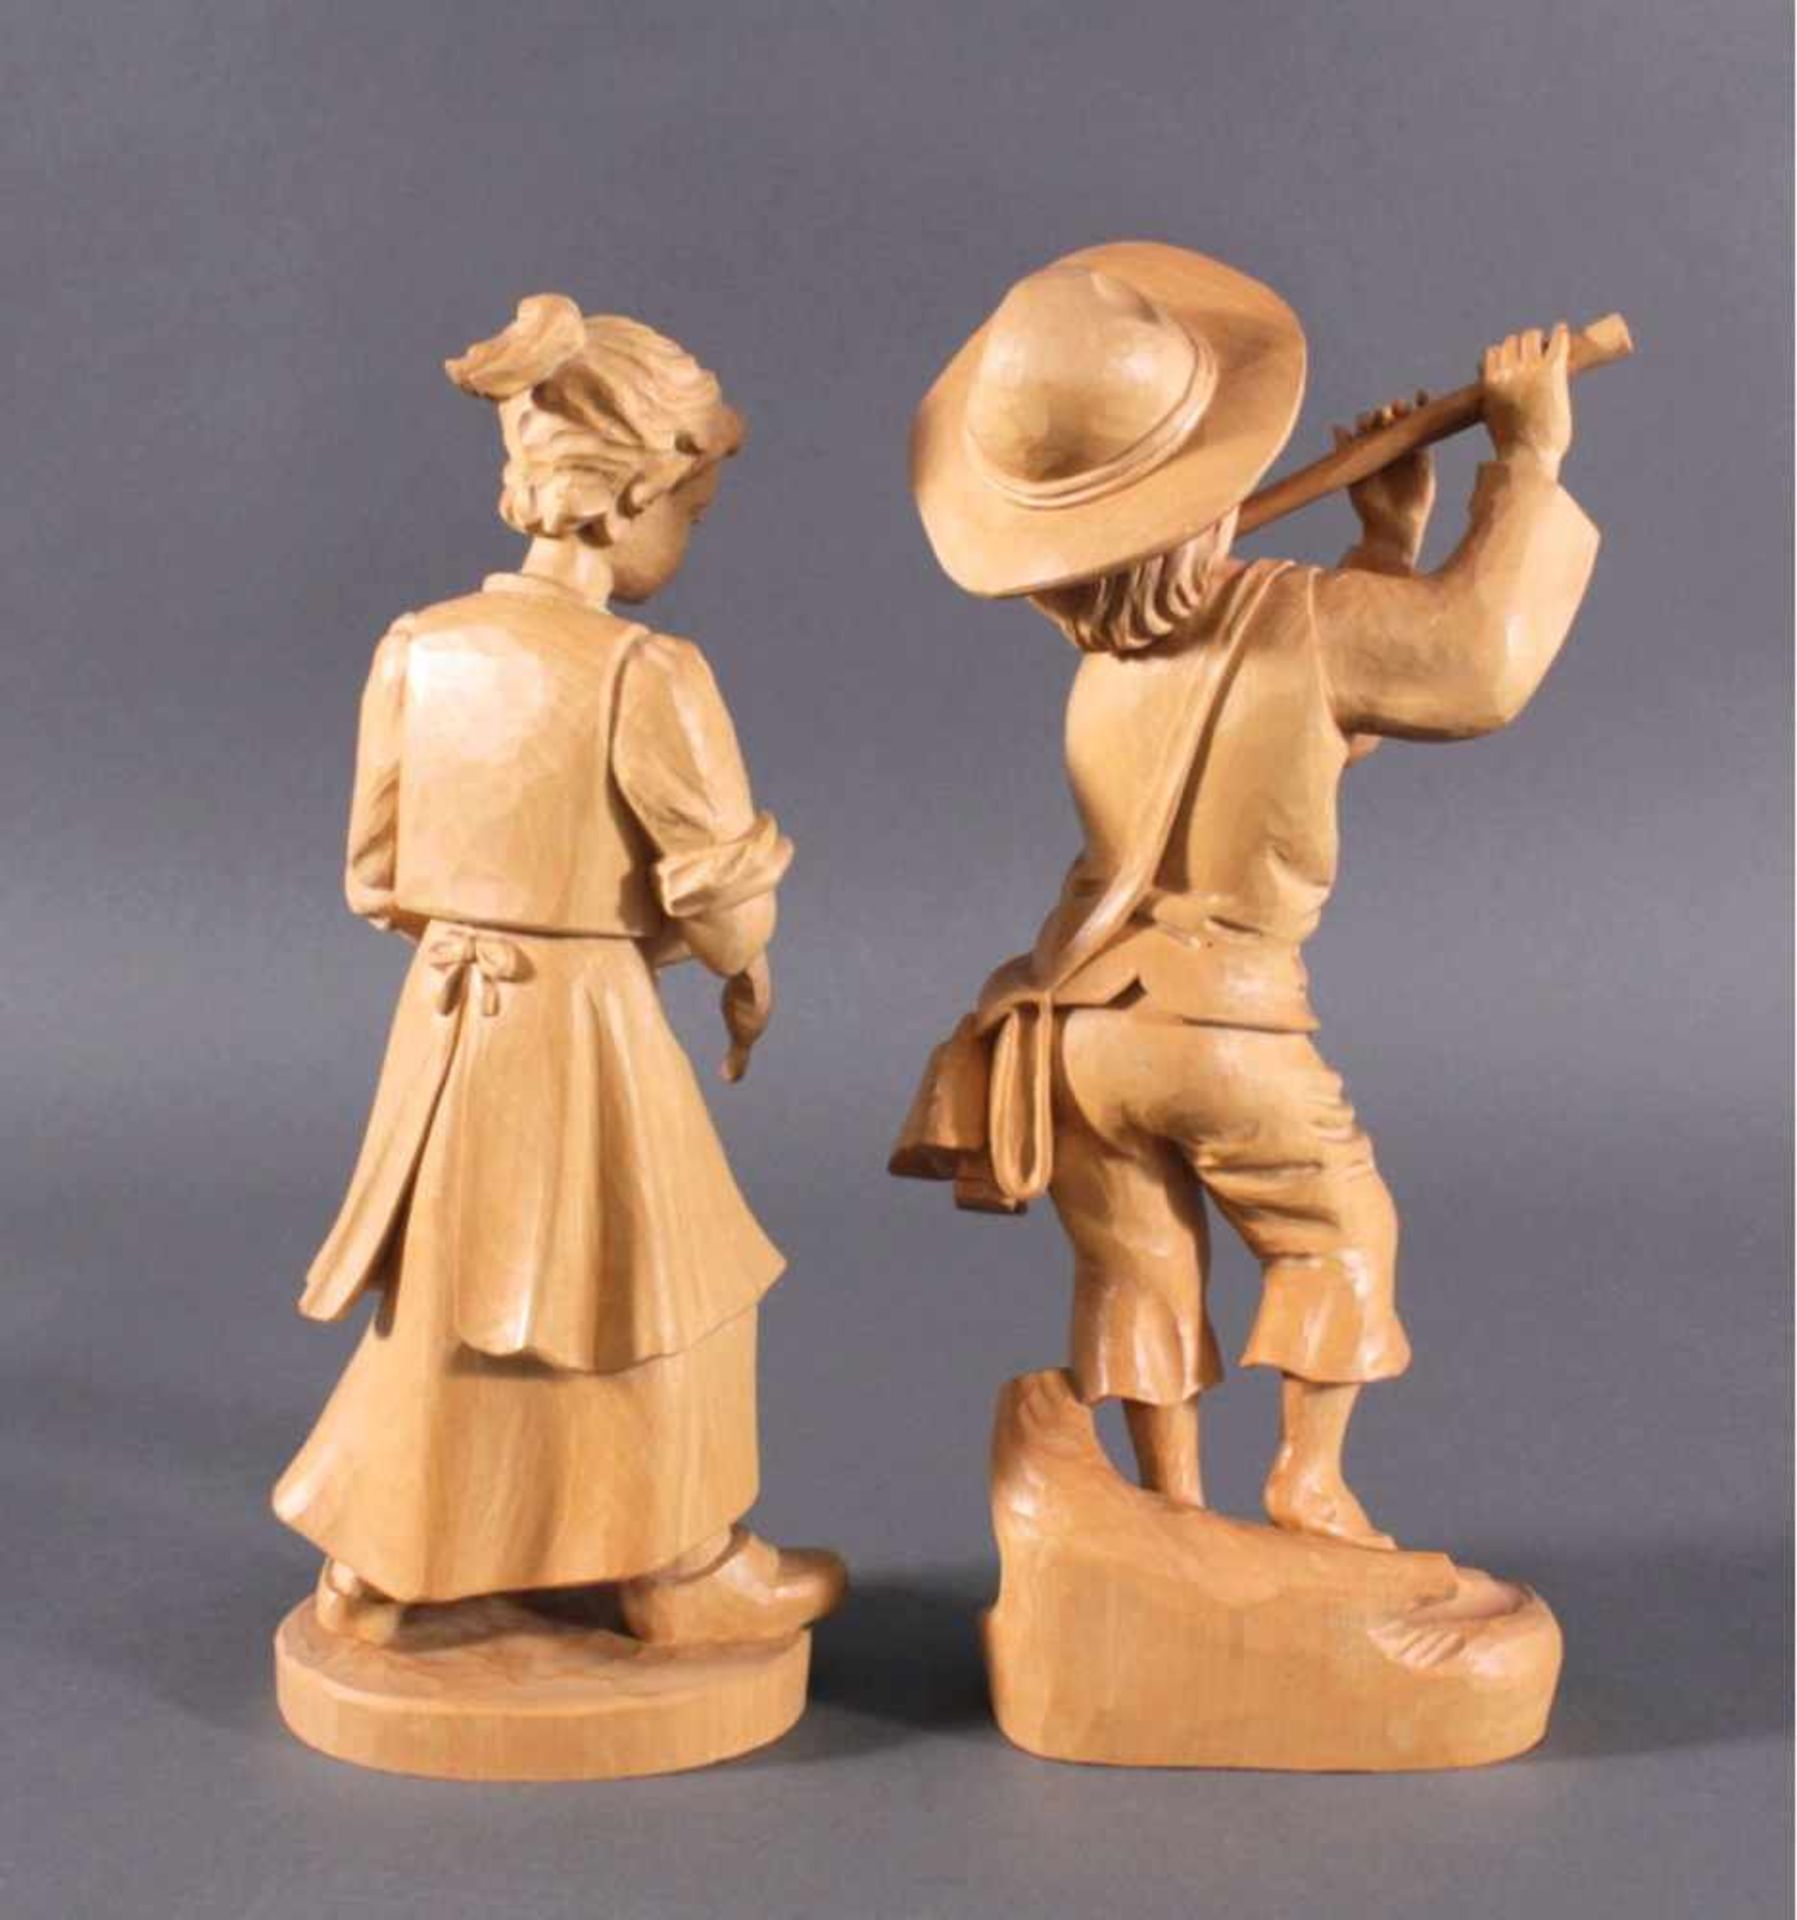 2 Holz-Skulpturen, Flötenspieler und GänselieselAus Lindenholz plastisch geschnitzt, Flöte mittig - Bild 2 aus 2